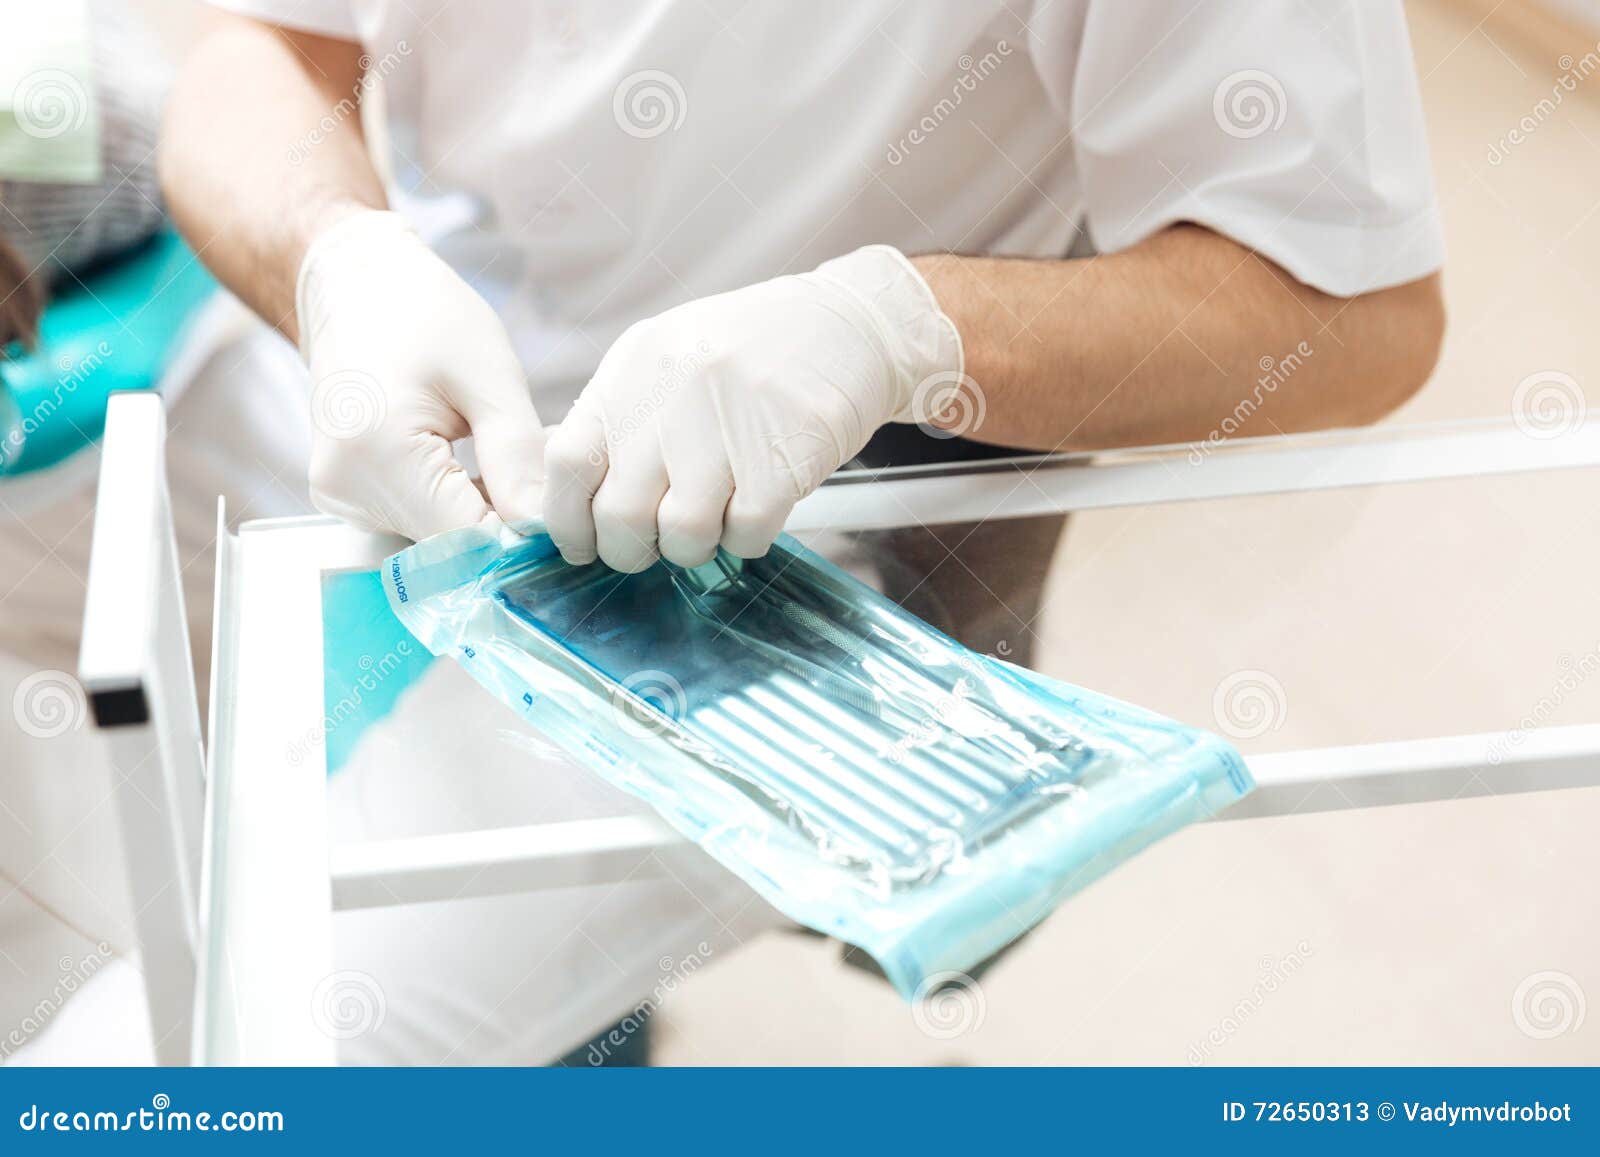 Стерильная стоматология. Асептика автоклавирование. Стерильные инструменты стоматологические. Мытье медицинских инструментов. Дезинфекция мед инструментов.